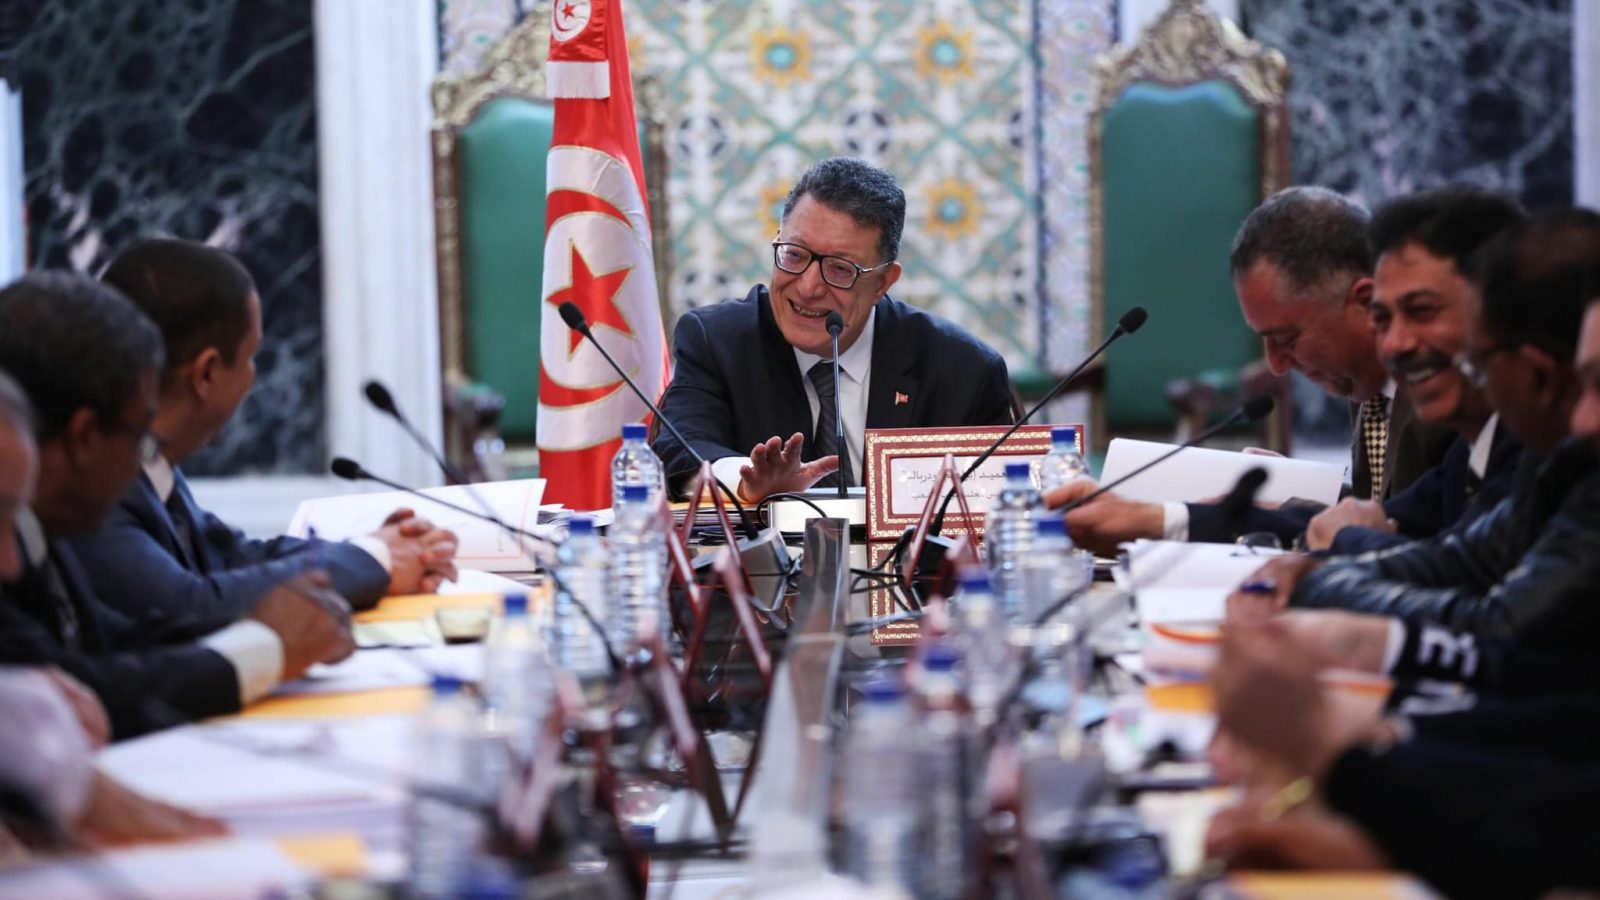 مكتب البرلمان يطلب استعجال النظر في انضمام تونس لاتفاقية “بودابست” للجرائم الالكترونية